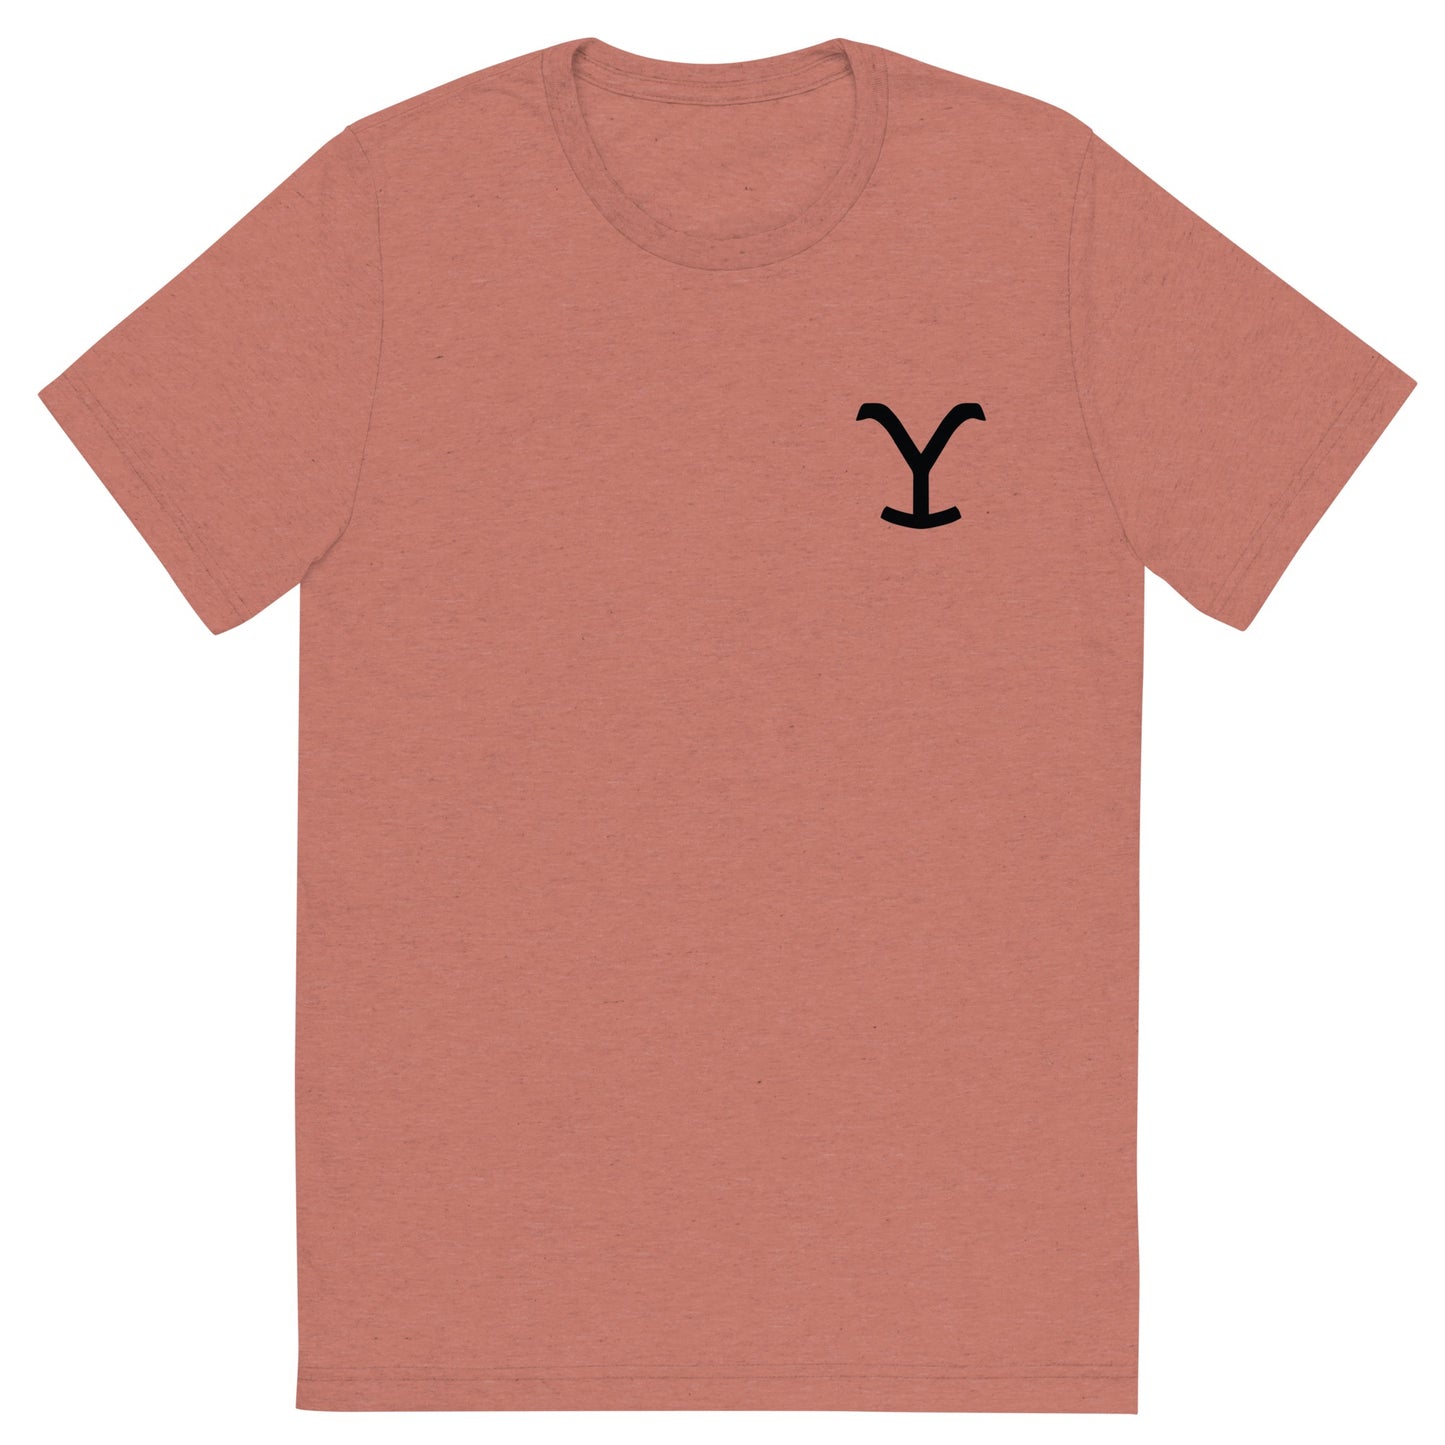 Yellowstone Dutton Ranch Montana Tri-Blend T-Shirt mit kurzen Ärmeln